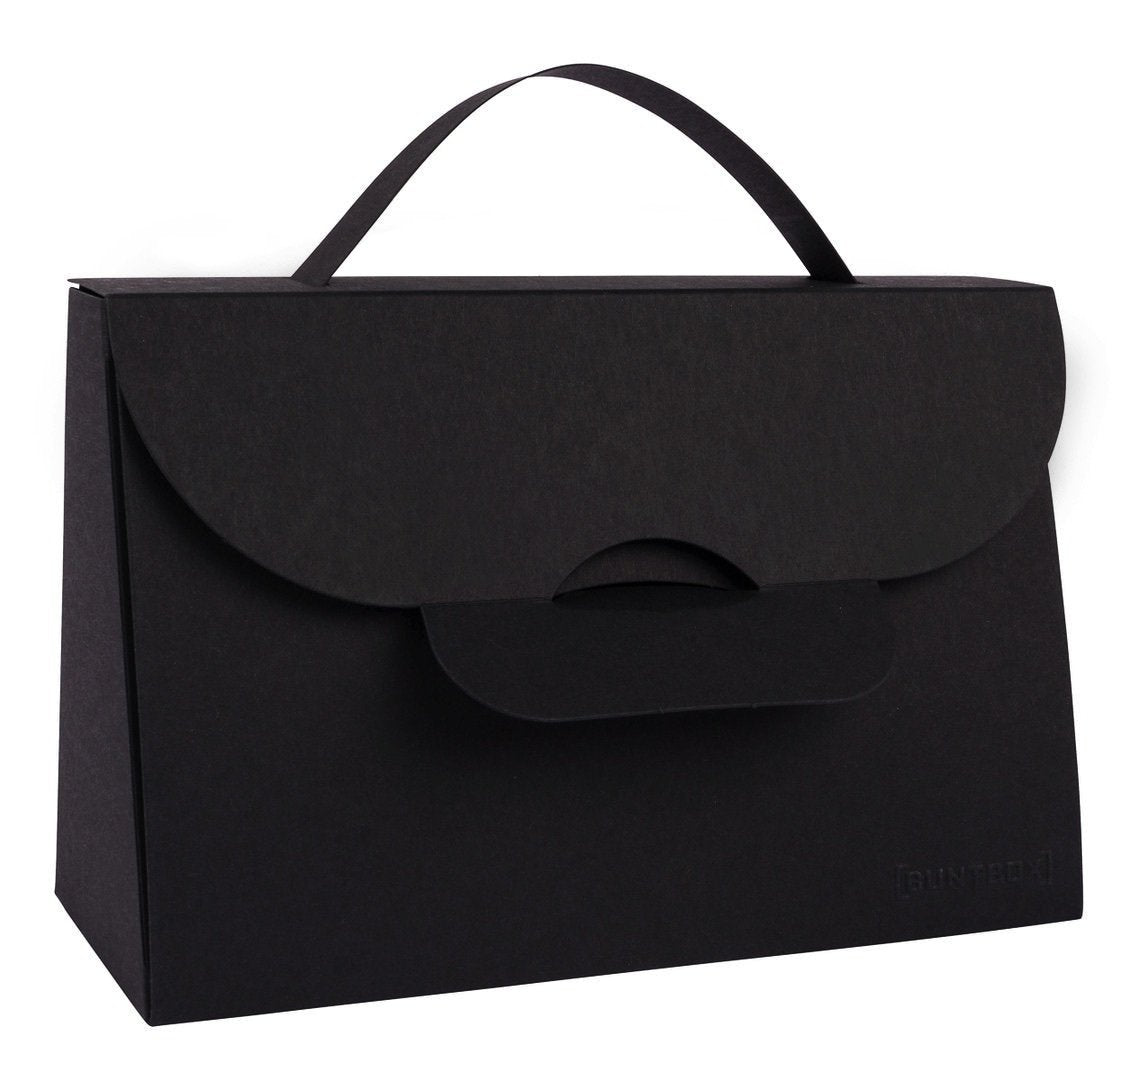 Handtasche aus Karton XL, schwarz graphit, 1 Stk